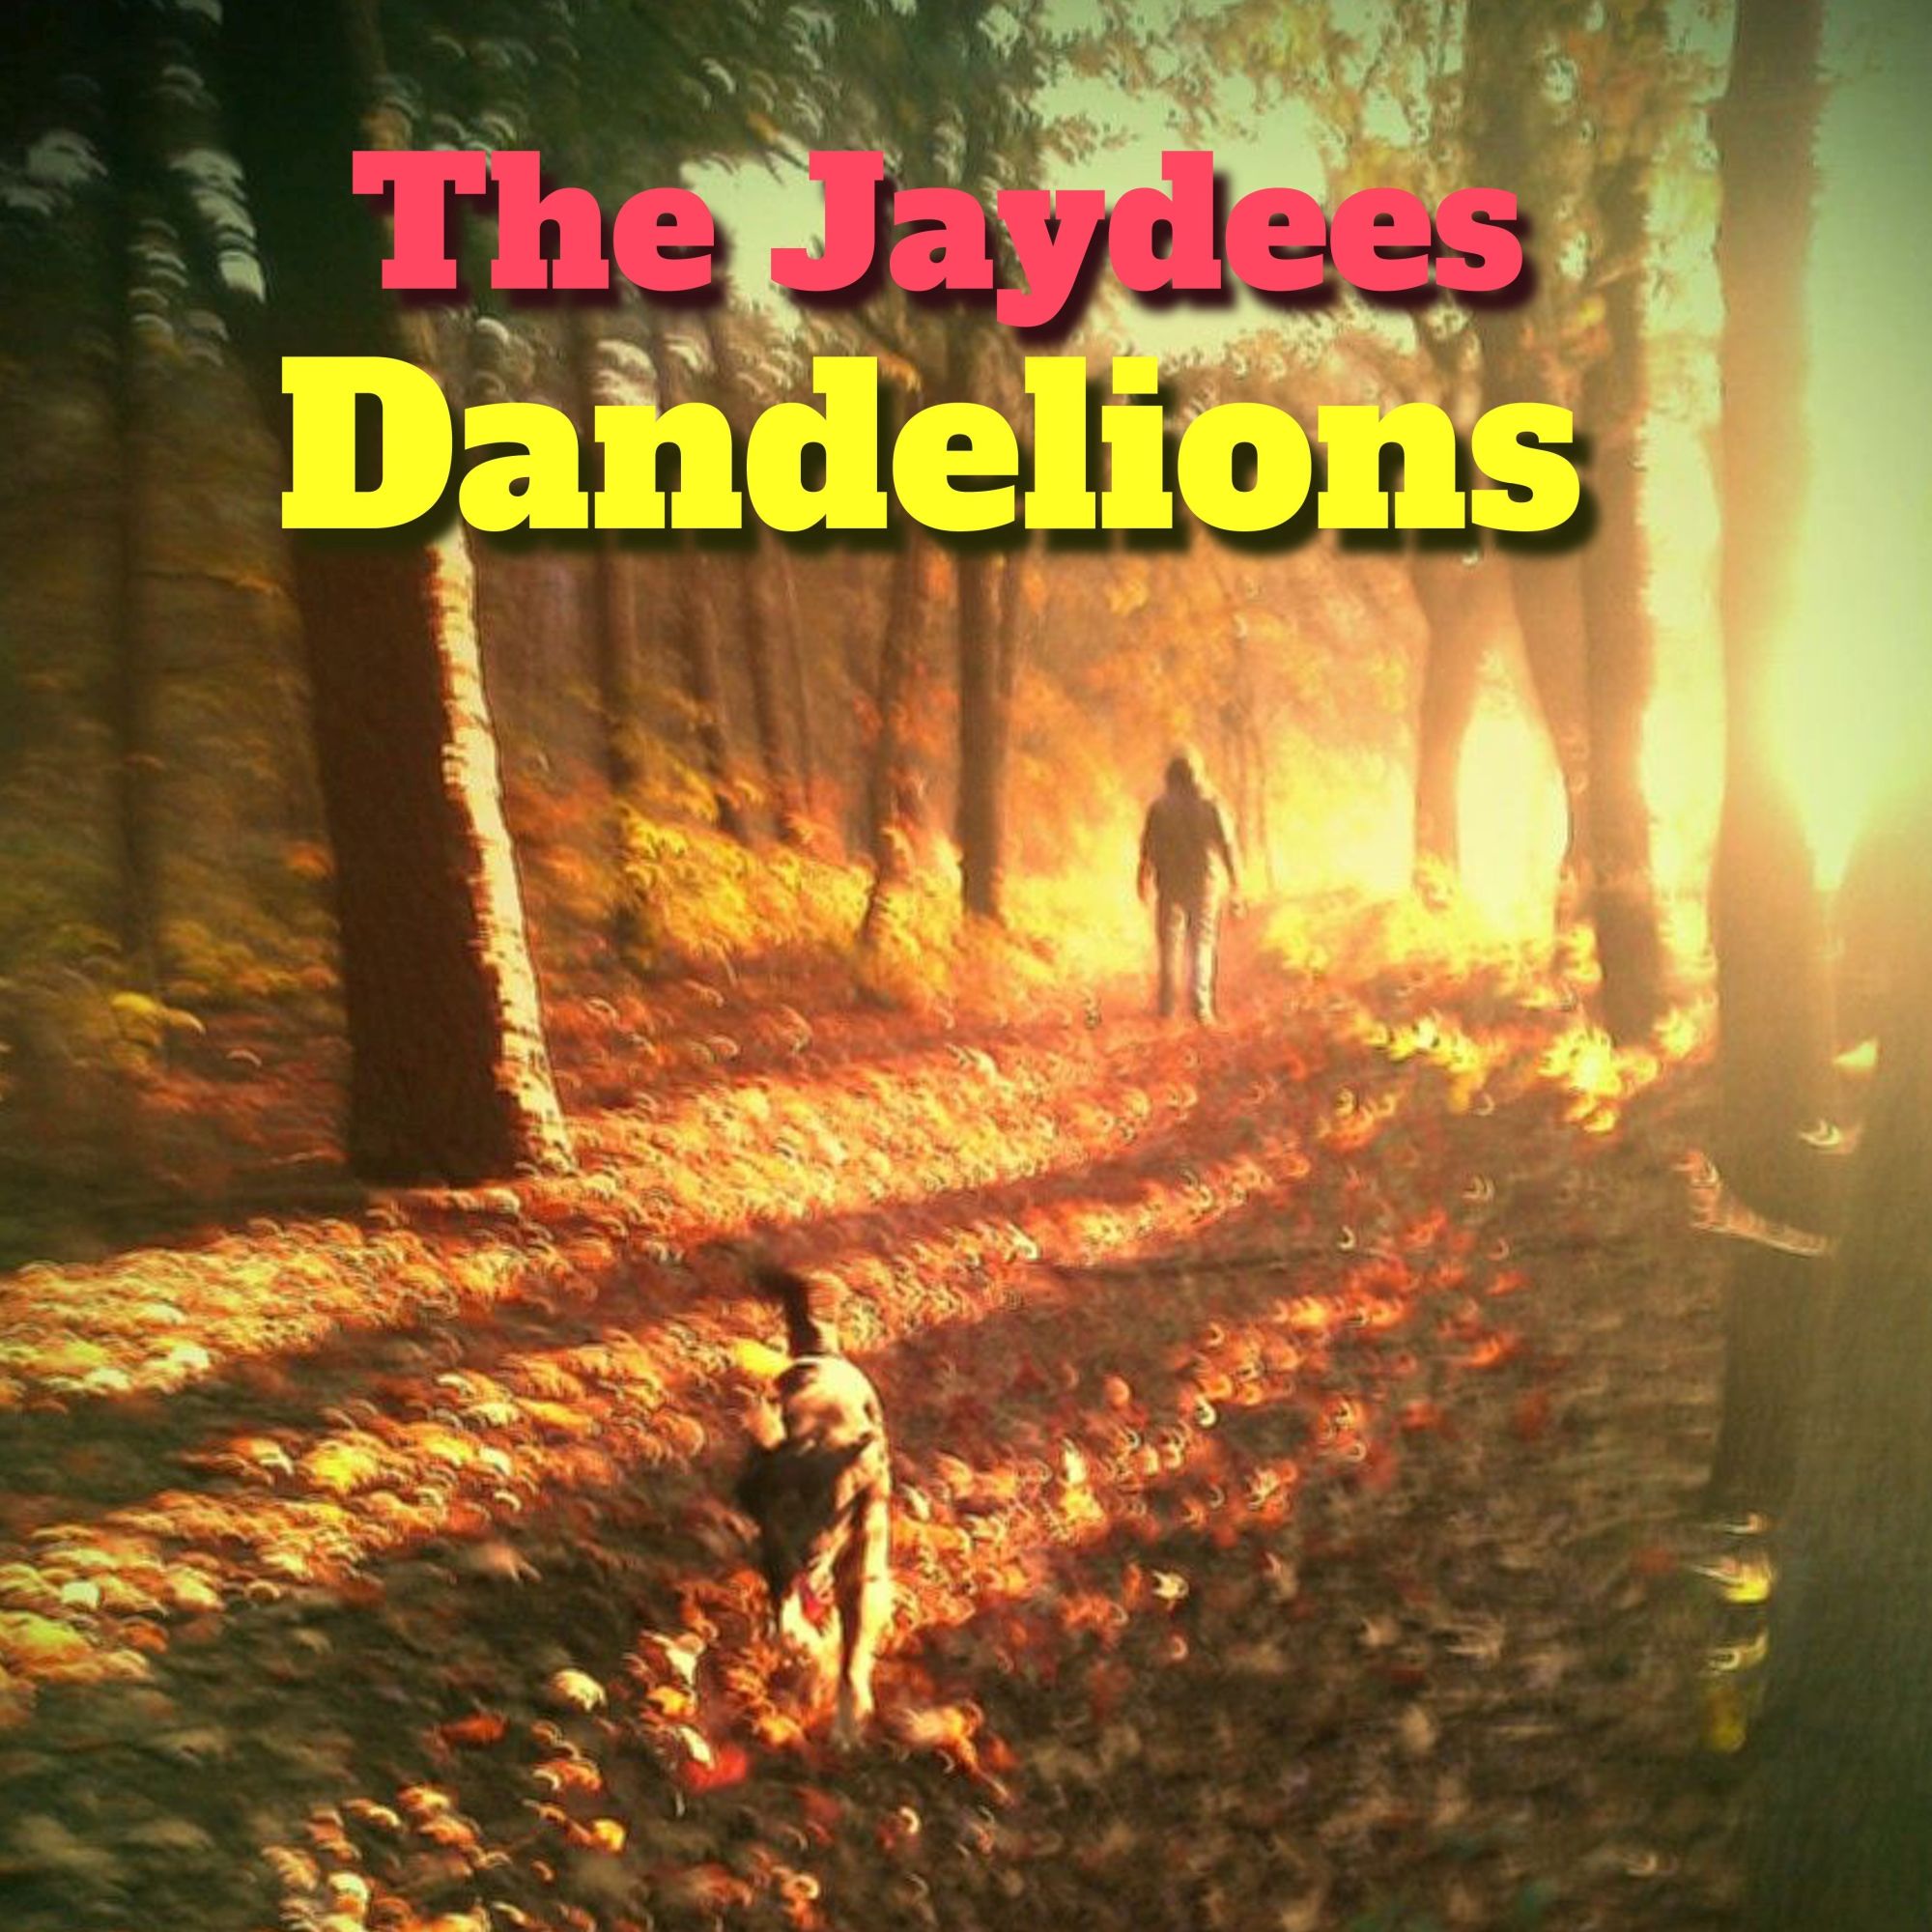 Jaydees Dandelions